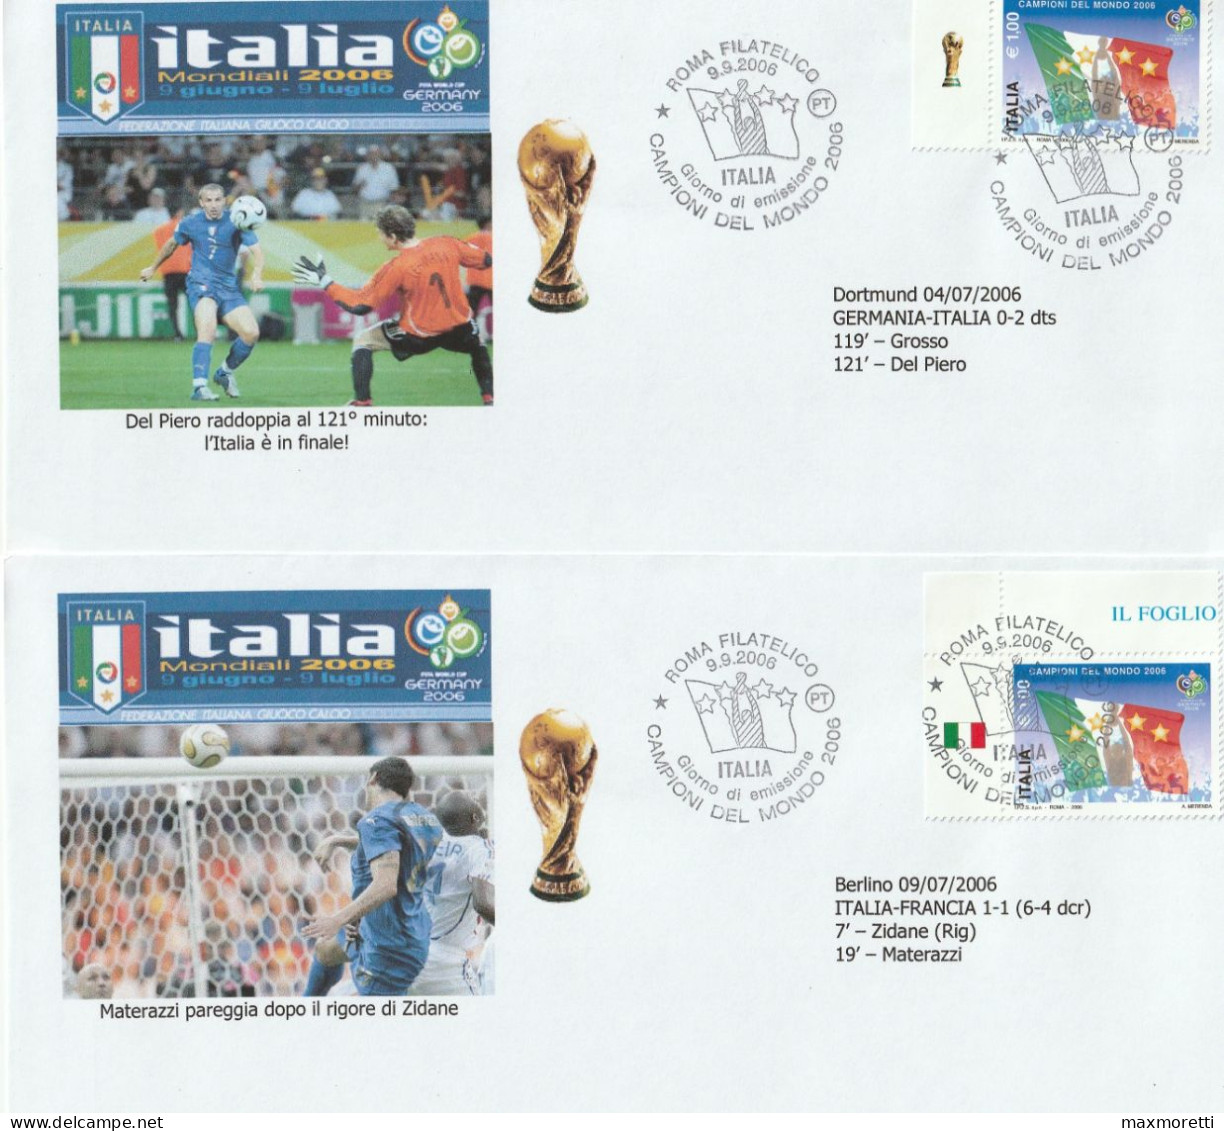 Italia Campione del Mondo 2006